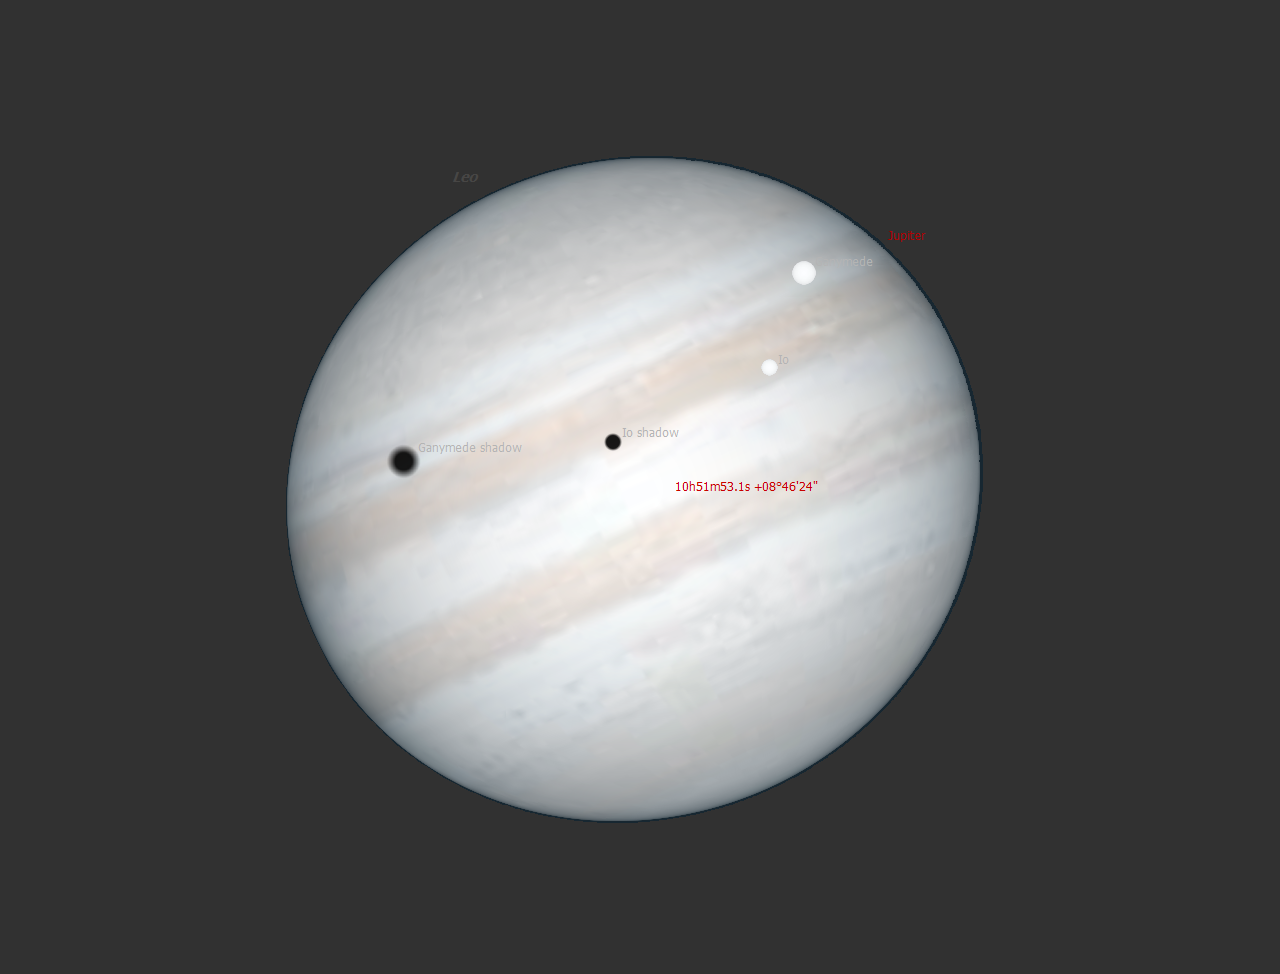 Demo of Eclipses on Jupiter